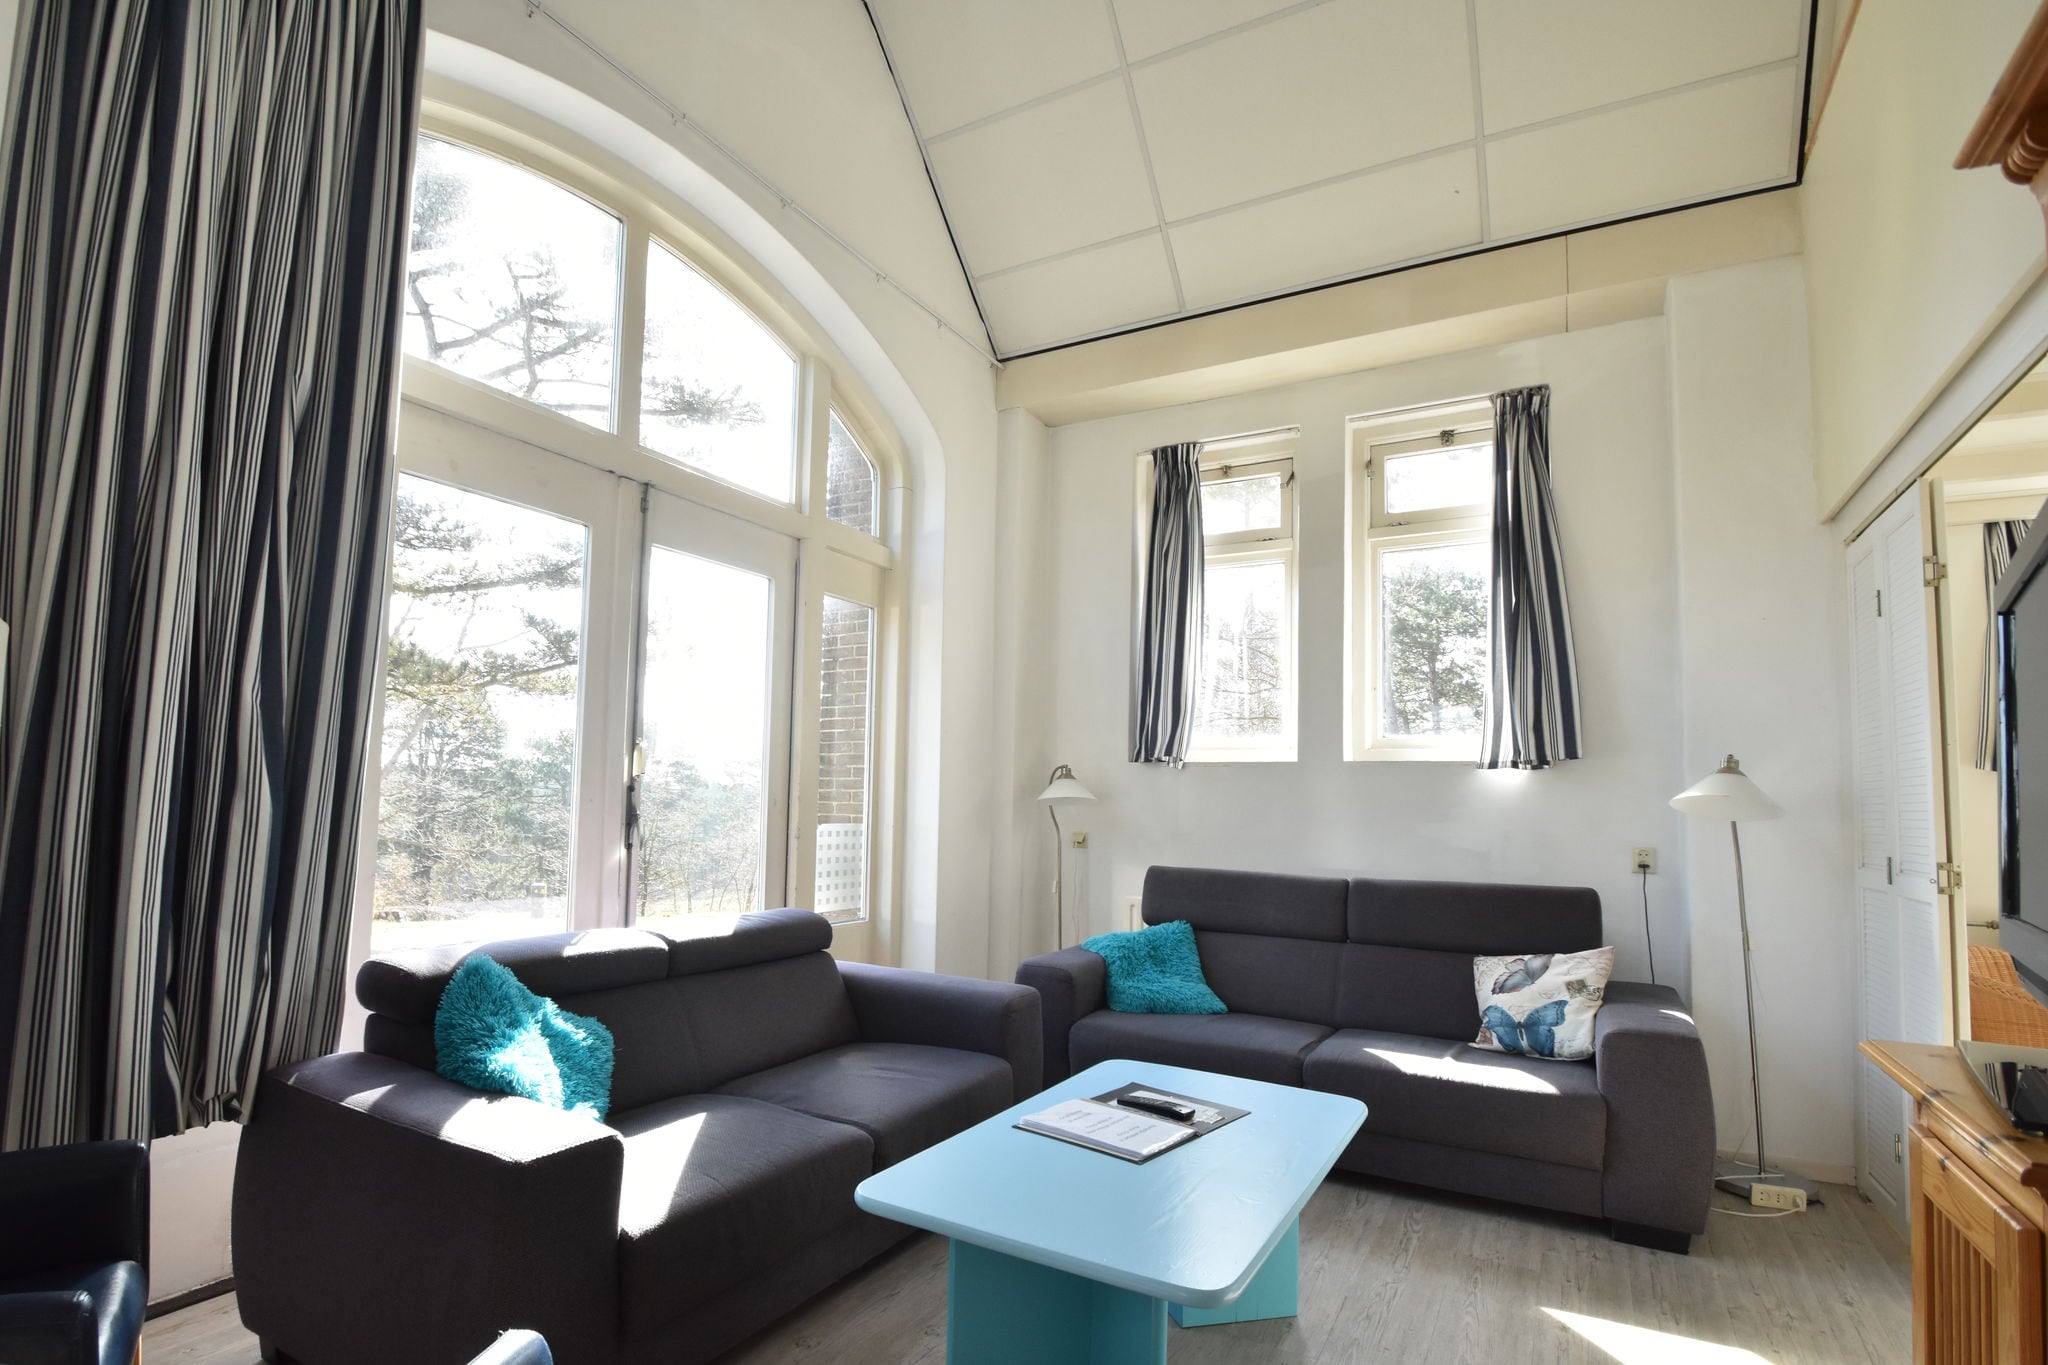 Maison de vacances à Bergen aan Zee près de la mer